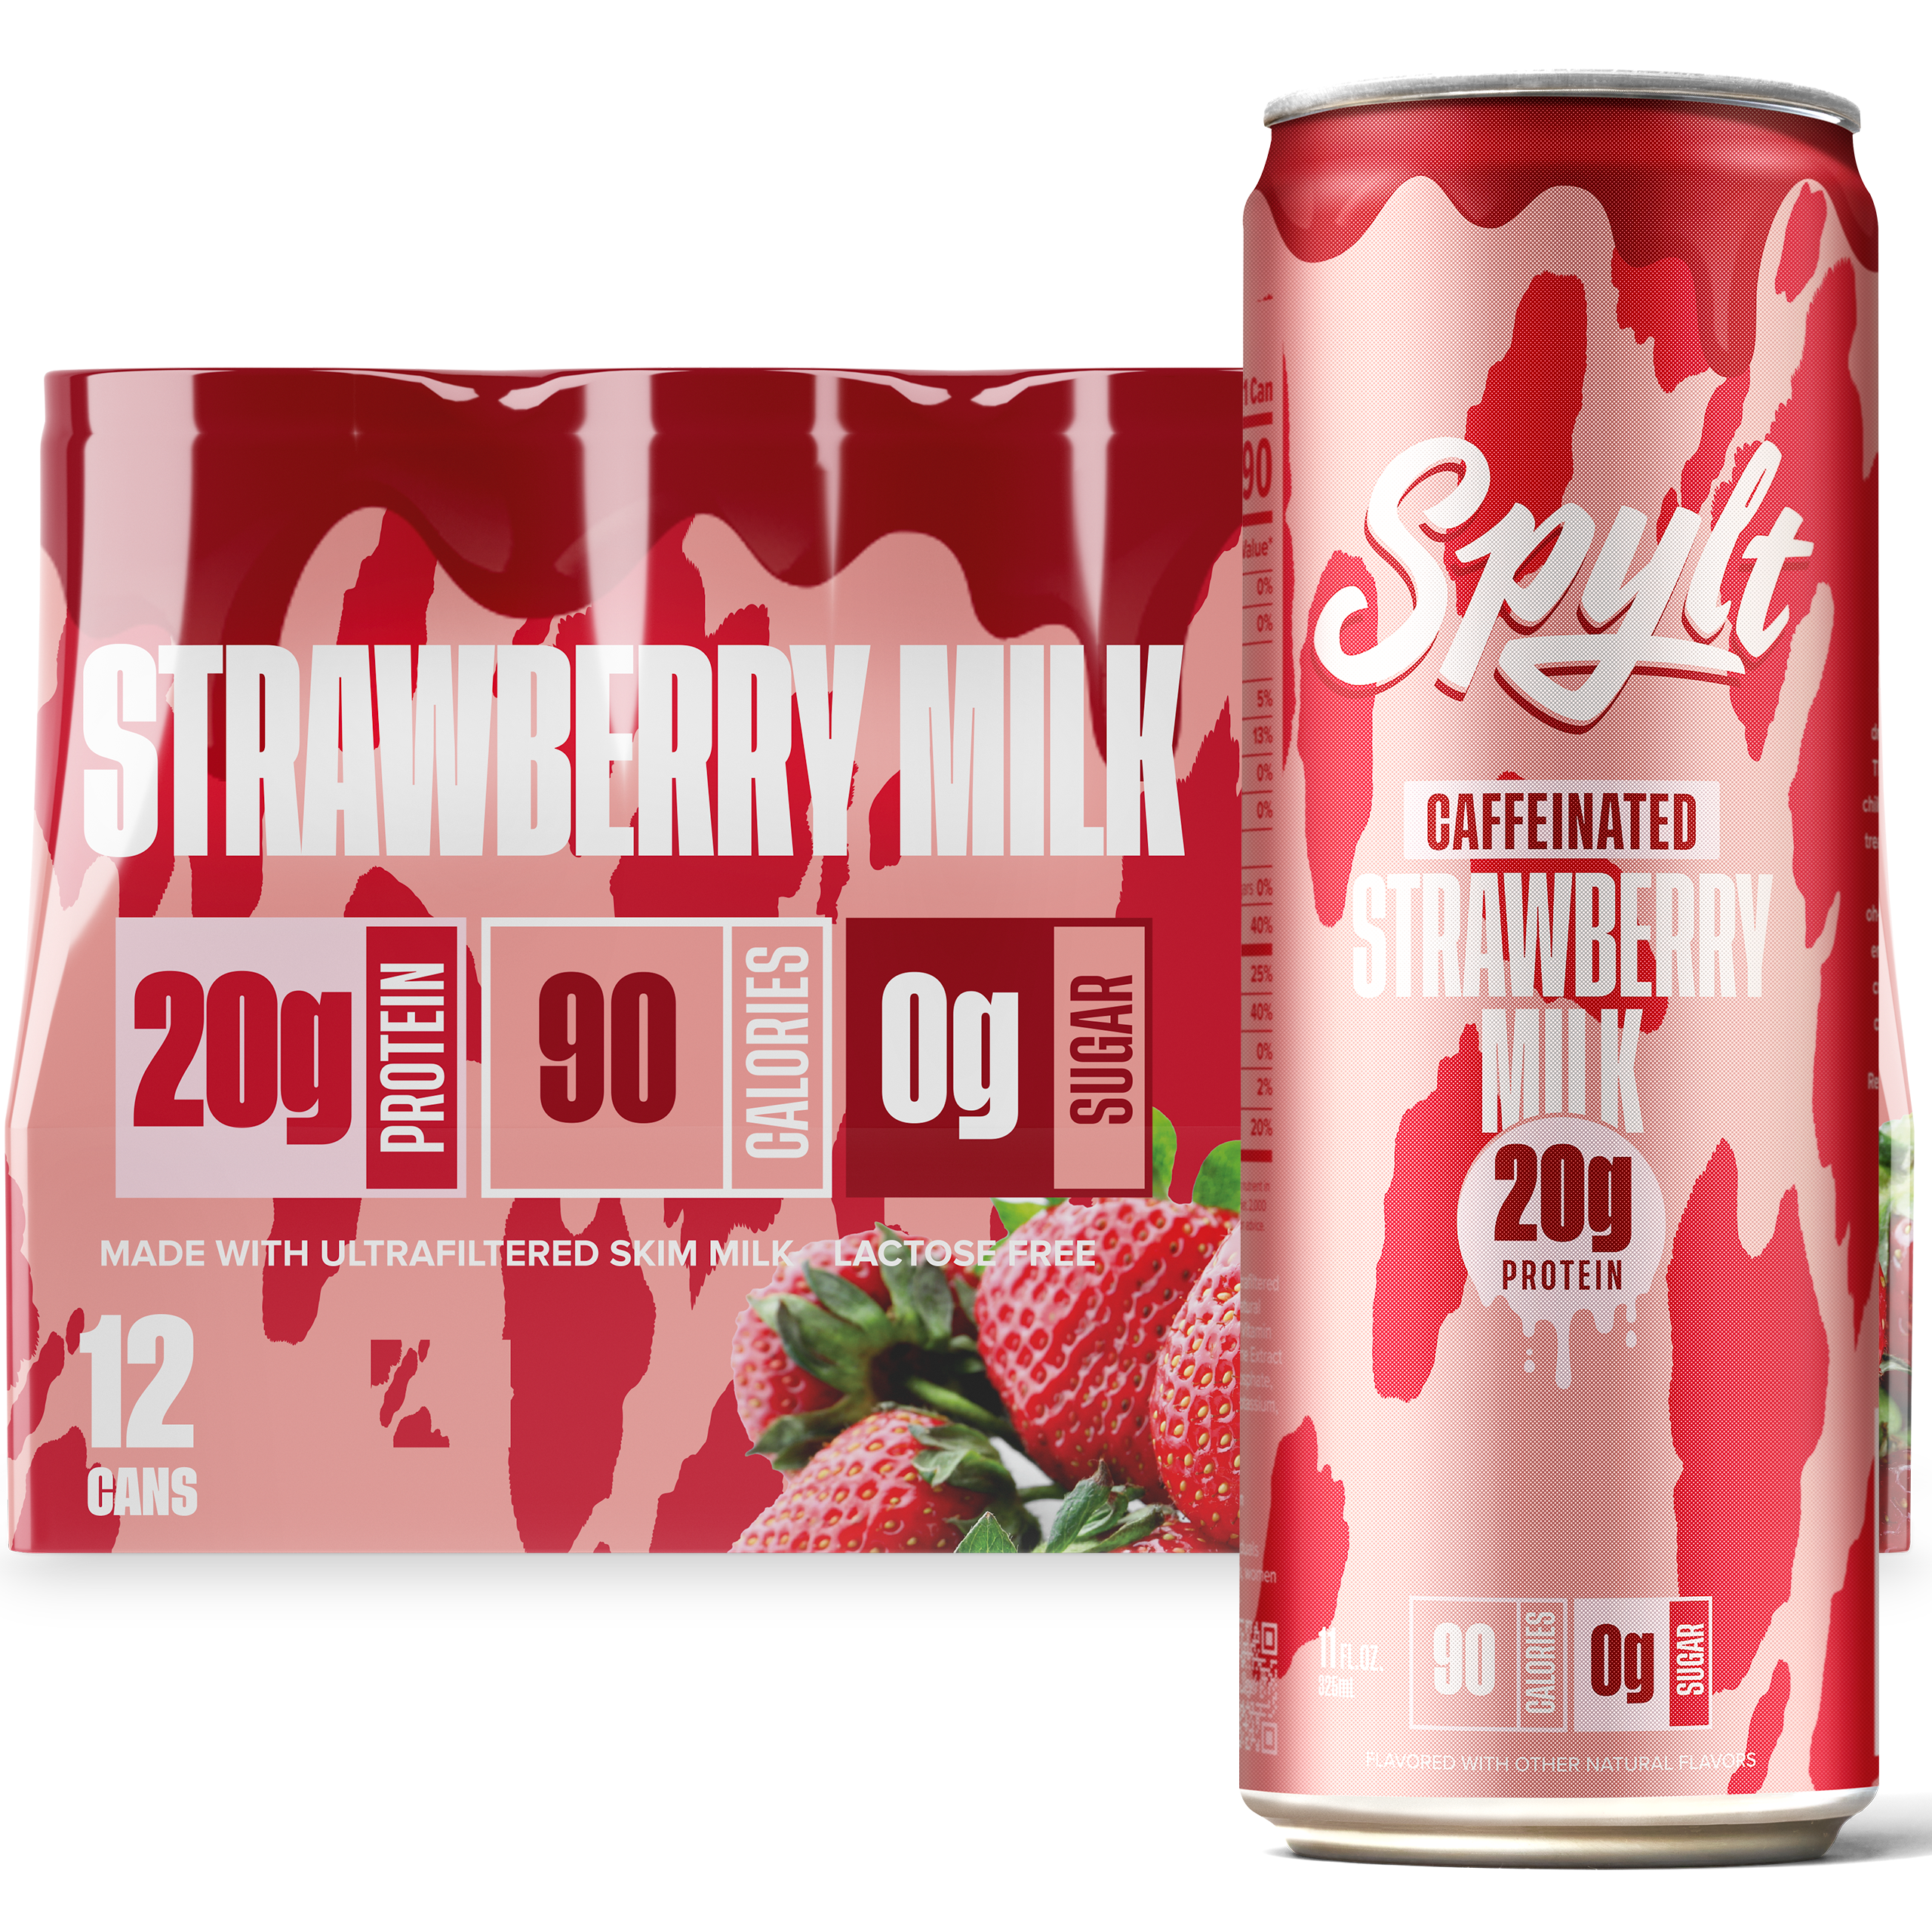 SPYLT Strawberry Milk